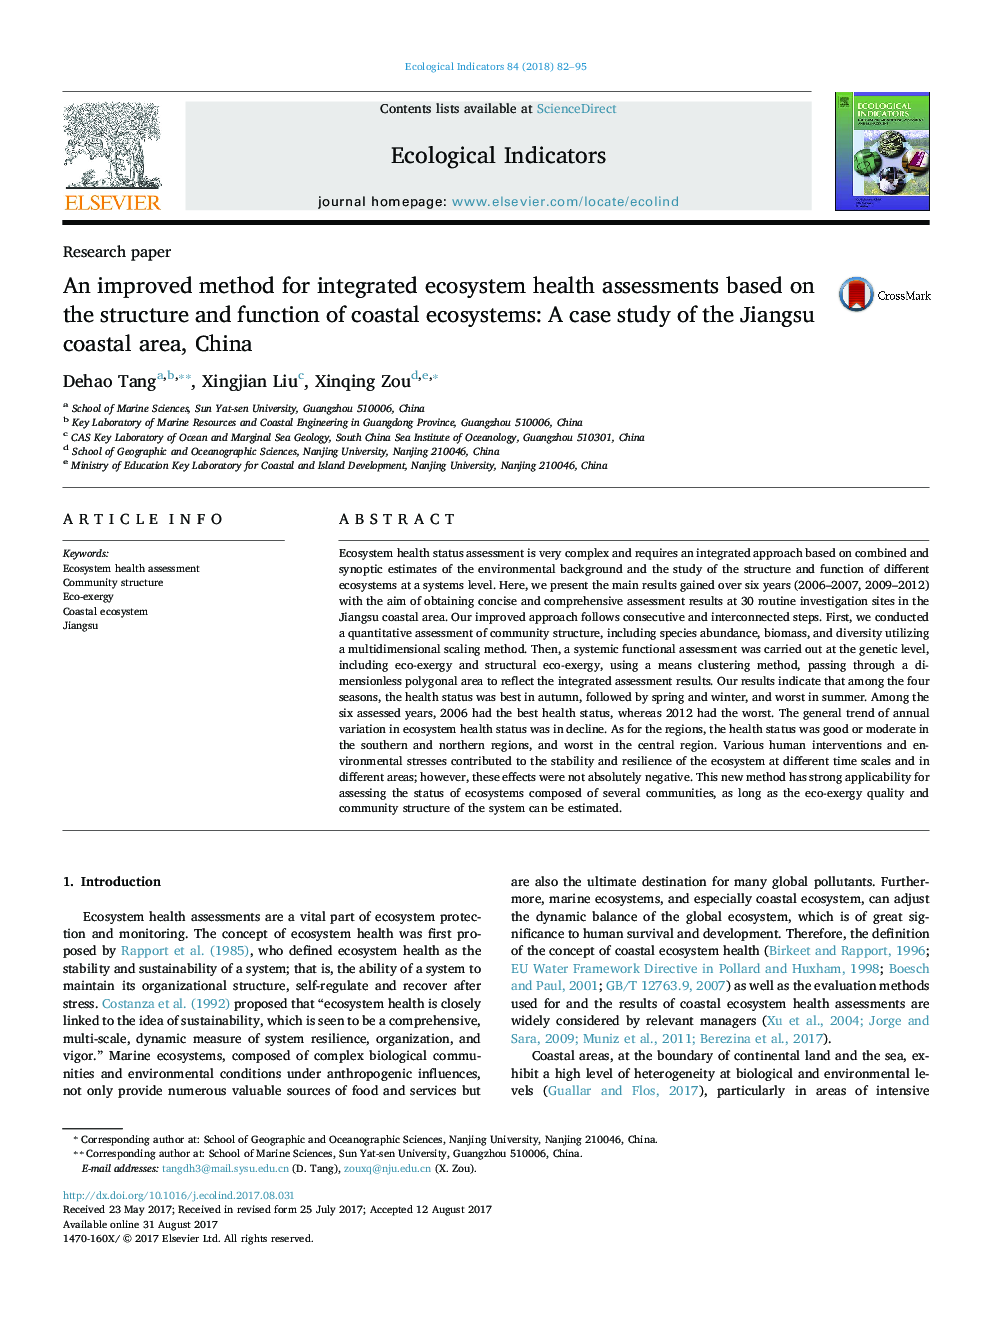 یک روش بهبود یافته برای ارزیابی سلامت اکوسیستم های یکپارچه بر اساس ساختار و عملکرد اکوسیستم های ساحلی: مطالعه موردی منطقه ساحلی جیانگ سو، چین